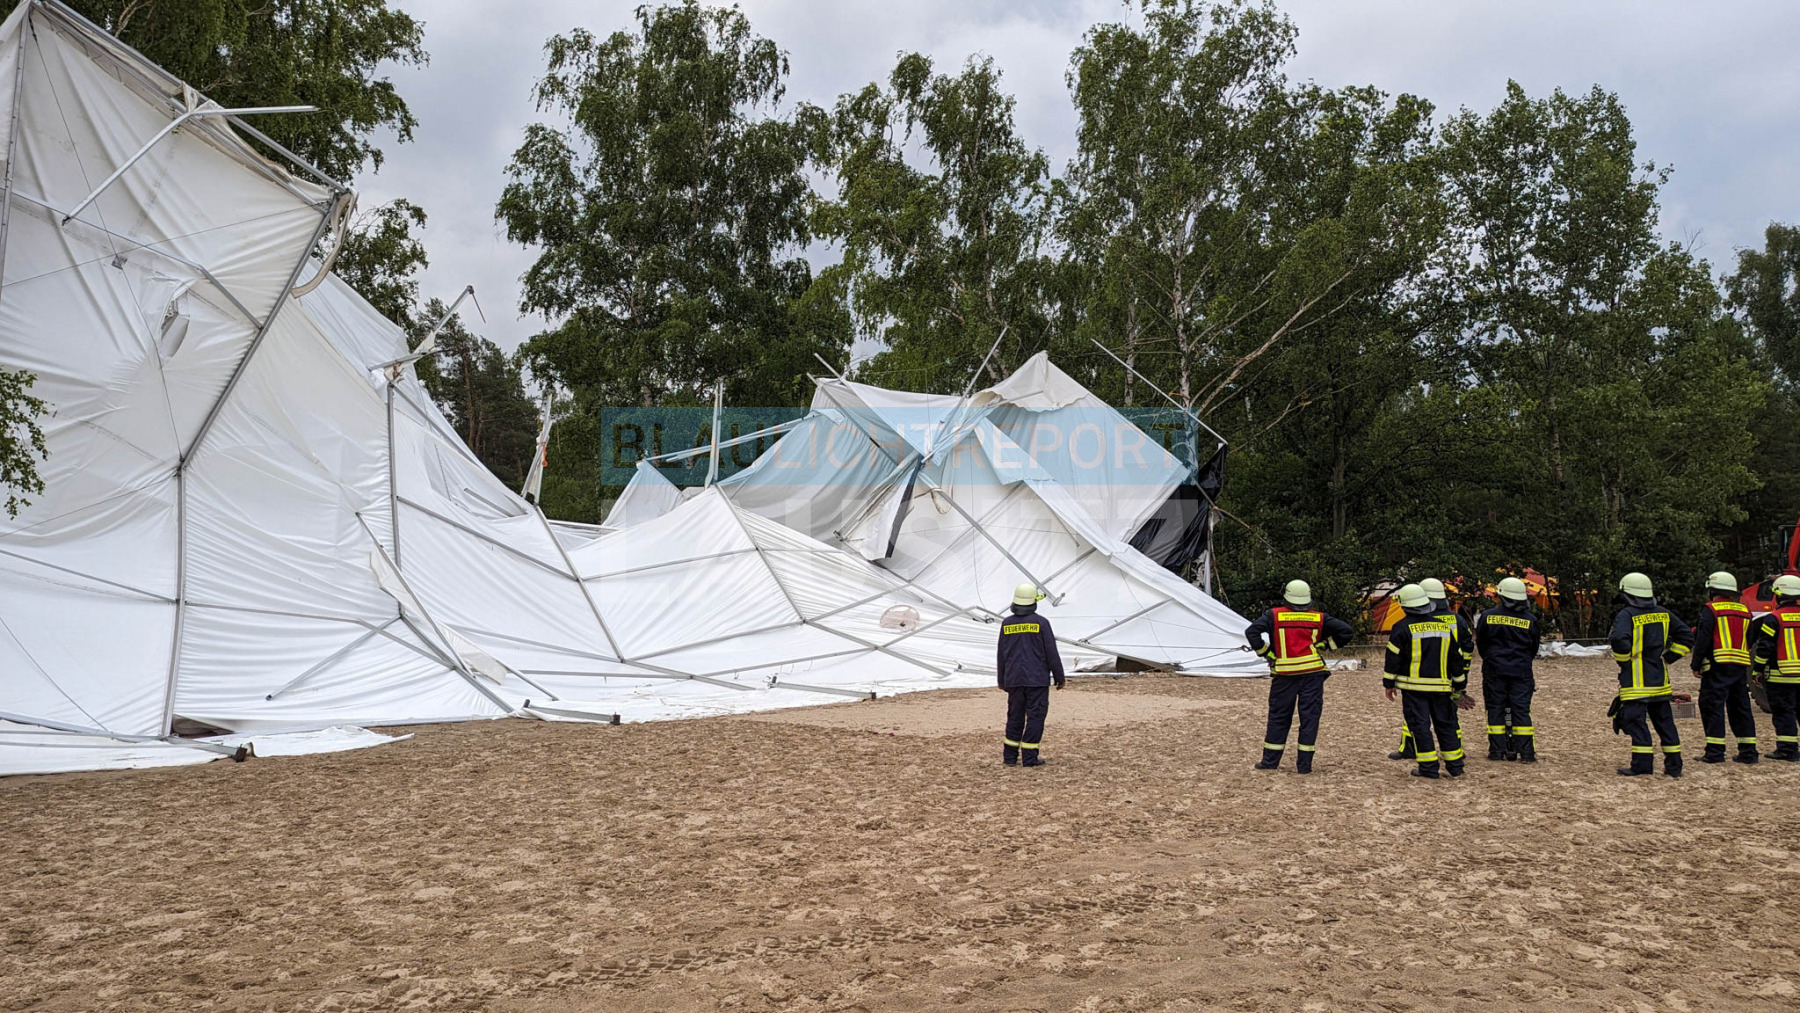 Bagenz: Großes Zelt hebt bei Sturm ab - eine verletzte Person